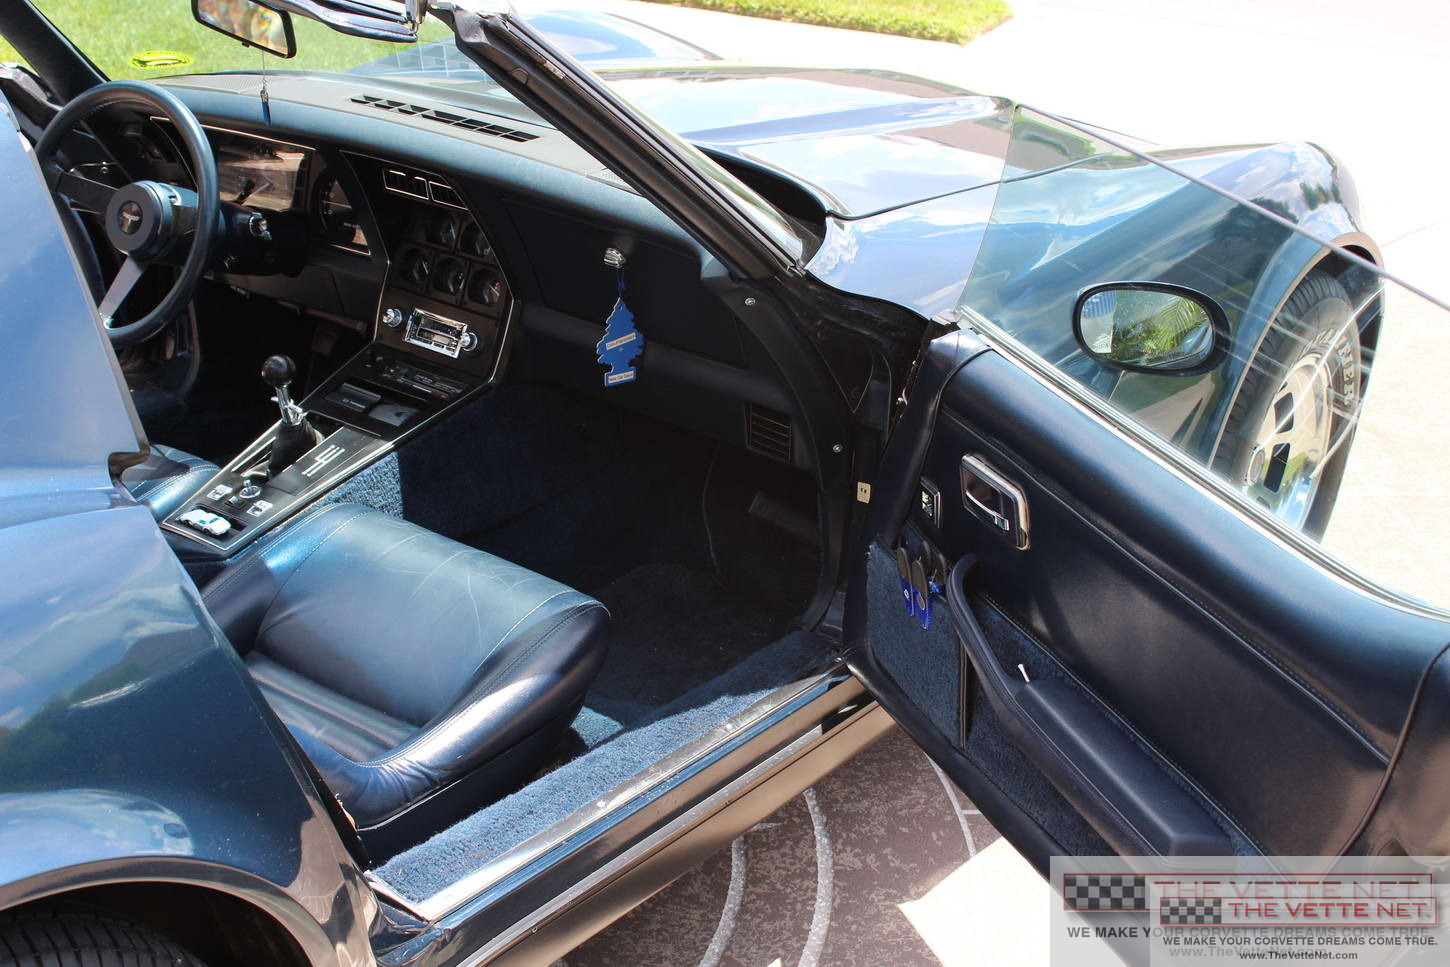 1981 Corvette T-Top Blue